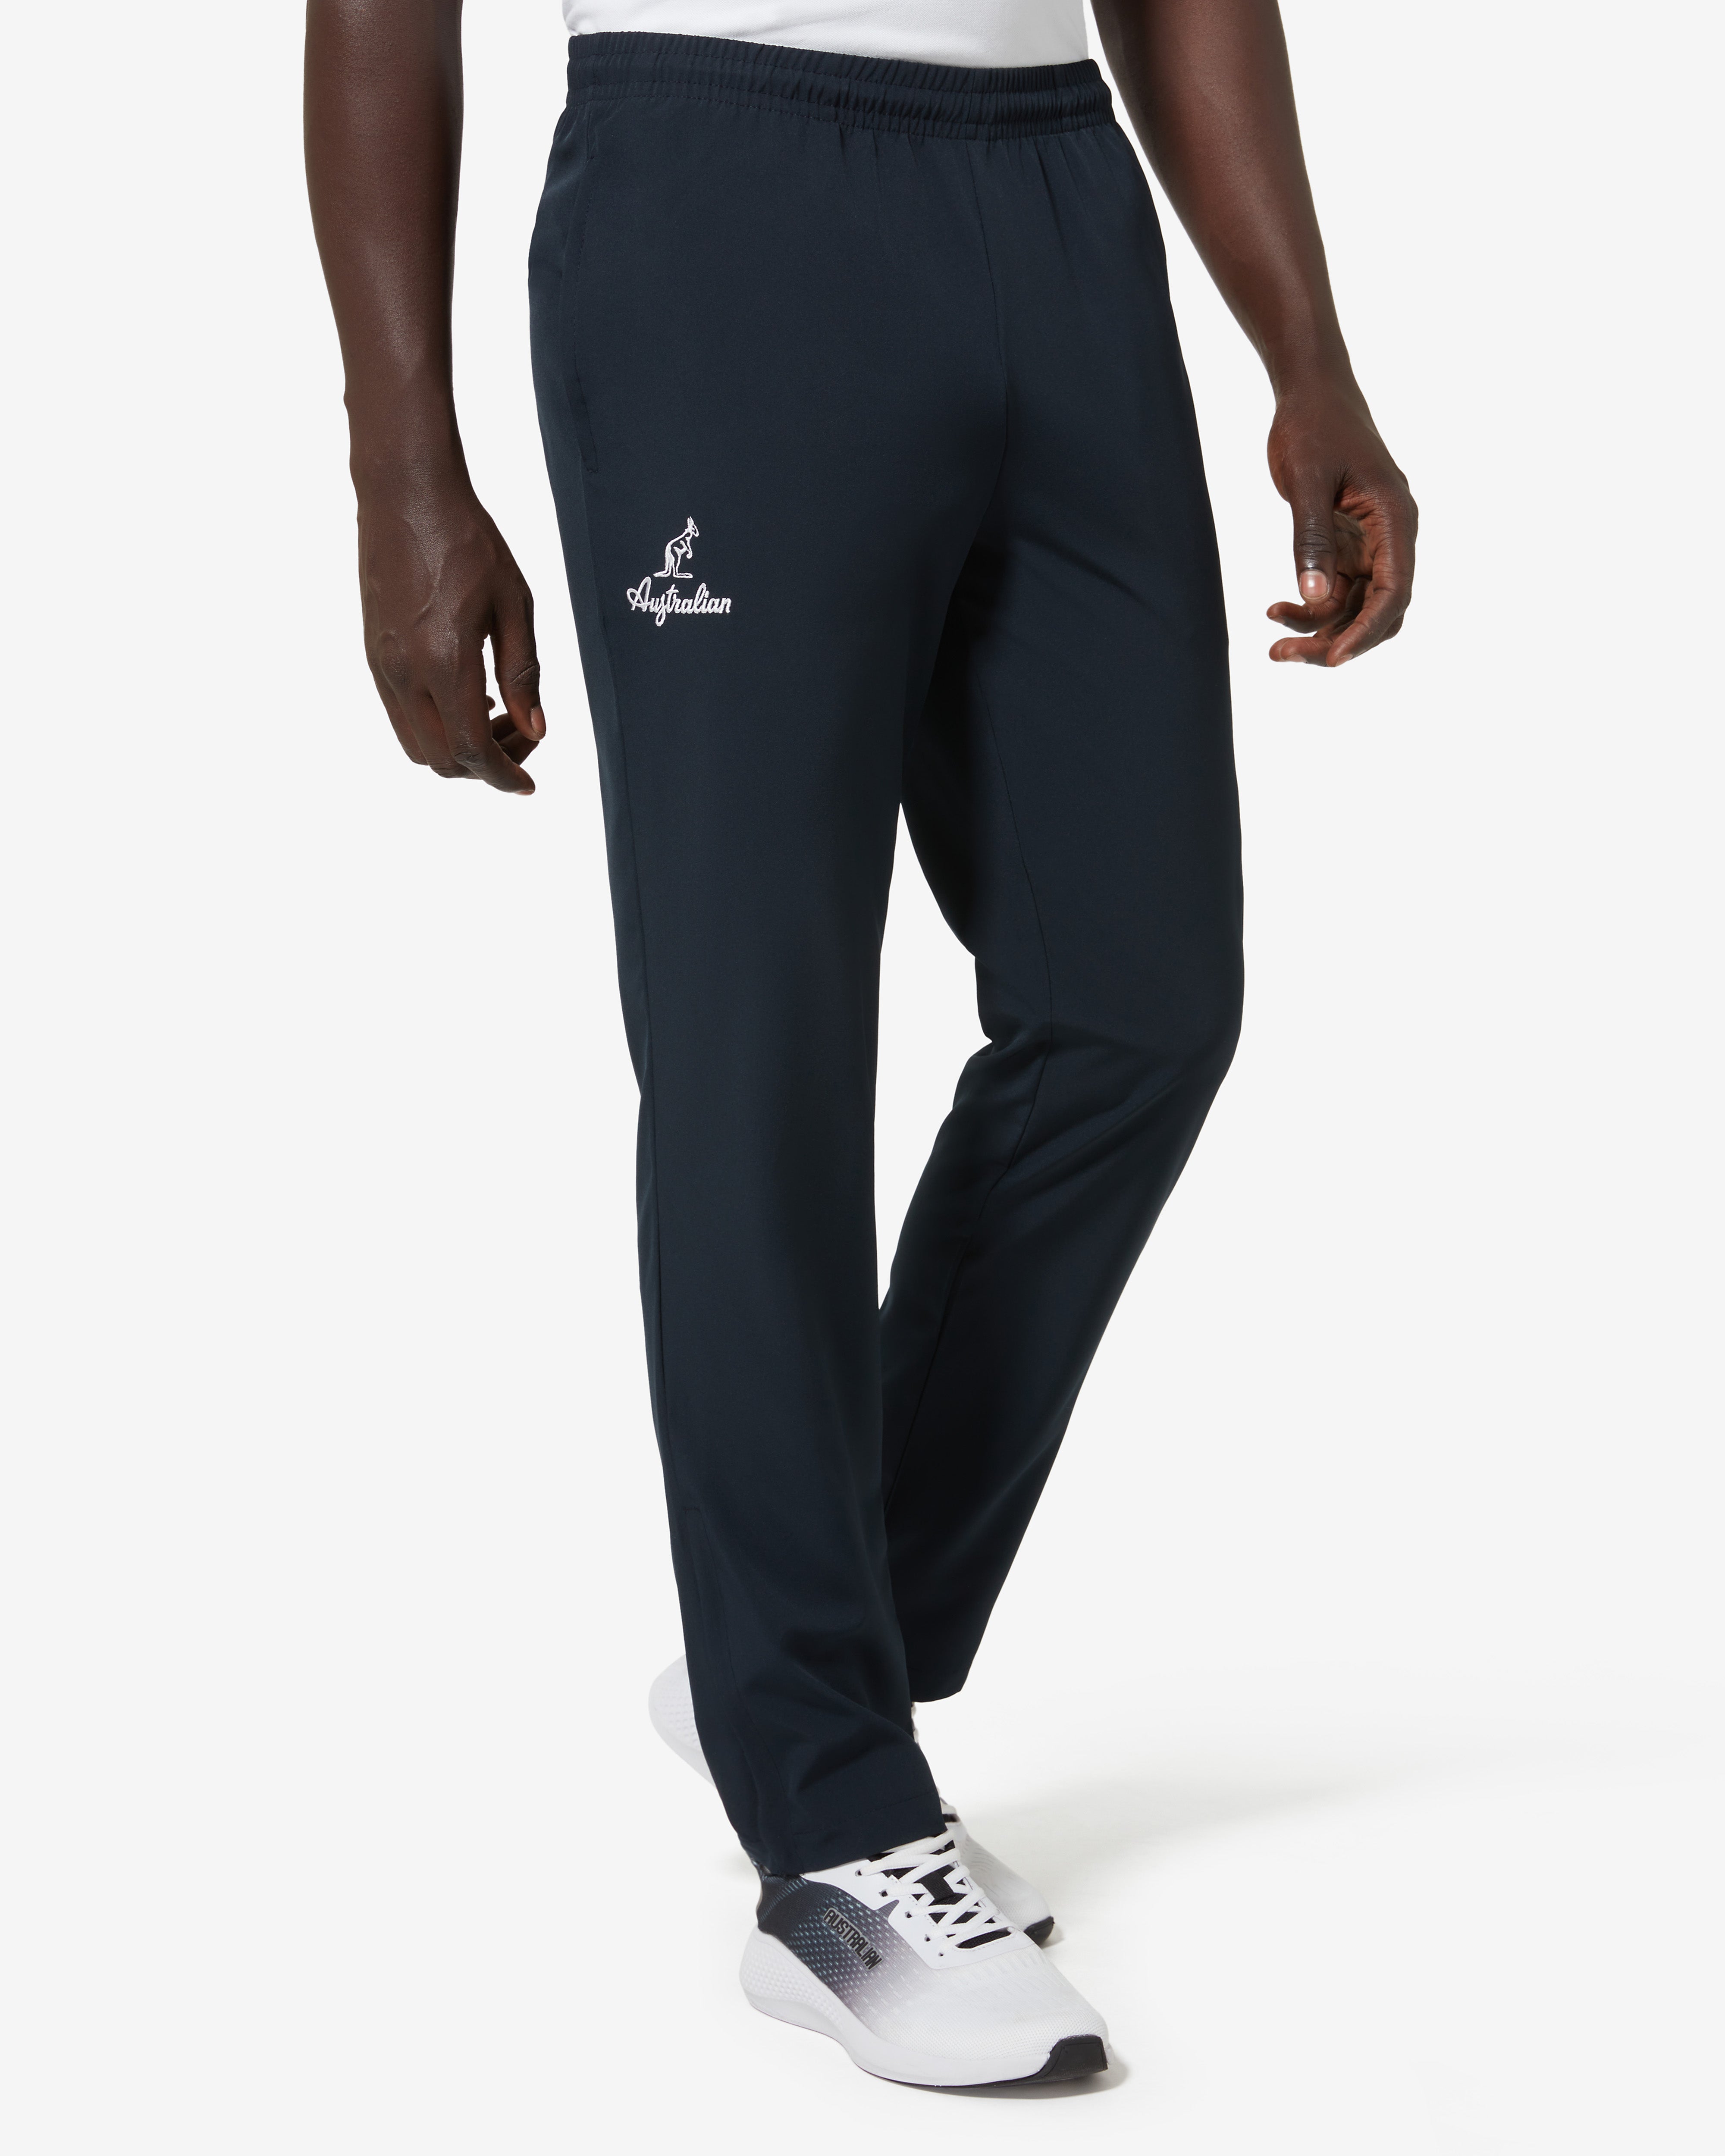 Black Cut & Sew Full Length Casual Men Slim Fit Track Pants - Selling Fast  at Pantaloons.com